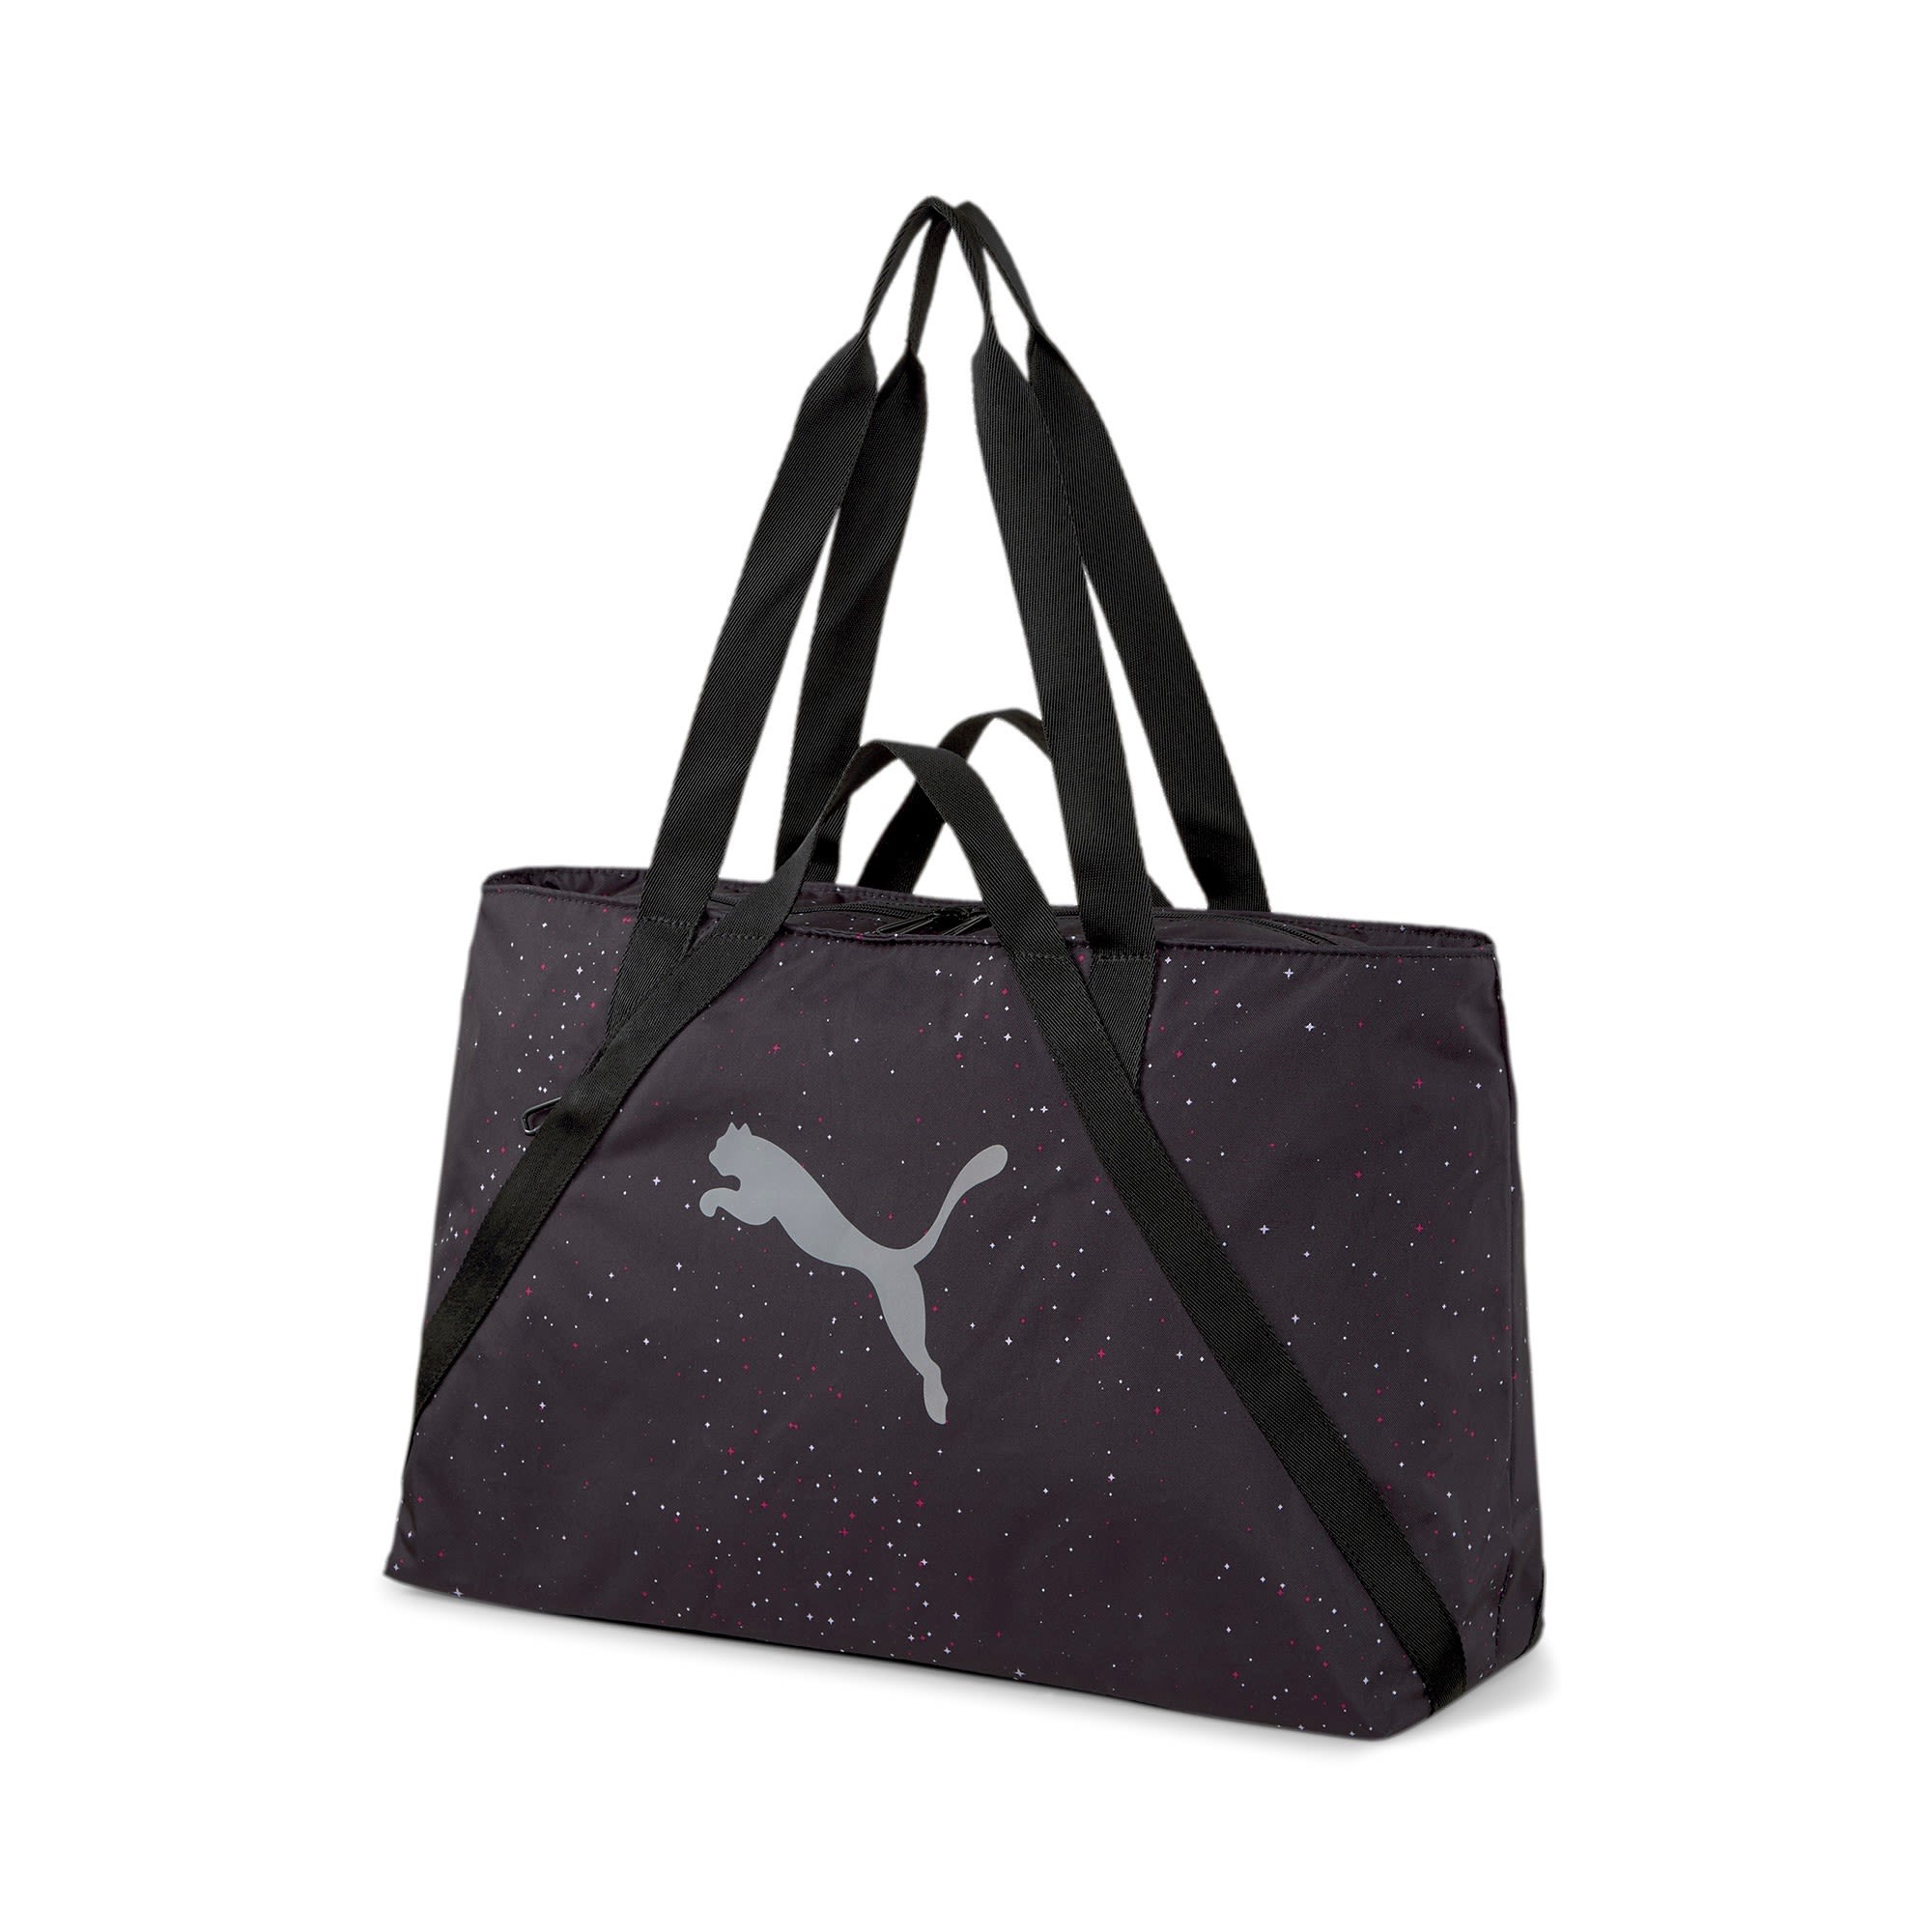 Puma AT Essentials Shopper Story Pack Schwarz- Female Sporttaschen- Grsse 23l - Farbe Puma Black